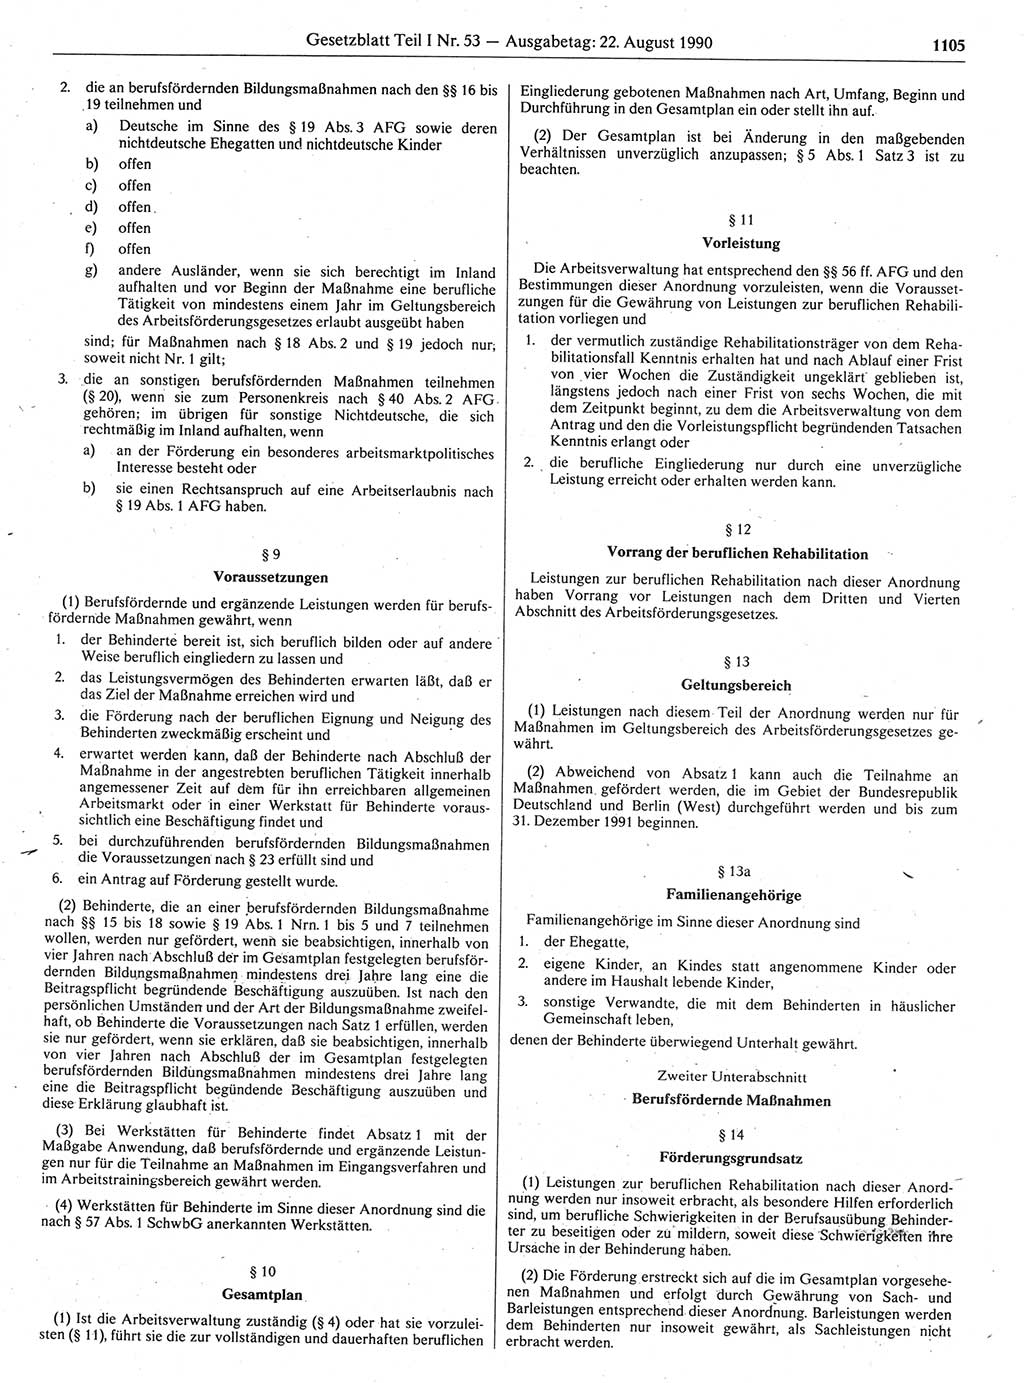 Gesetzblatt (GBl.) der Deutschen Demokratischen Republik (DDR) Teil Ⅰ 1990, Seite 1105 (GBl. DDR Ⅰ 1990, S. 1105)